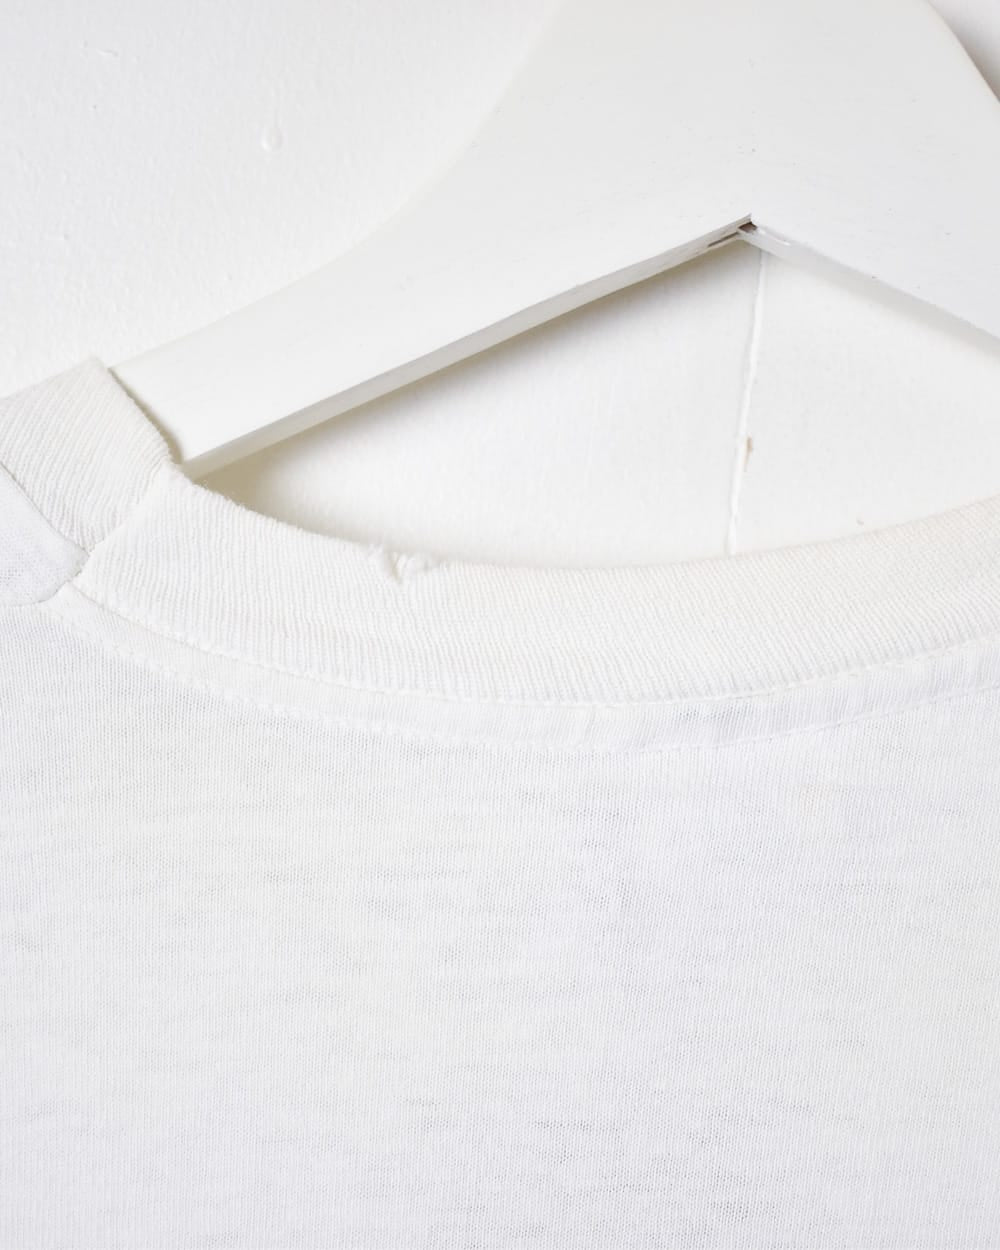 White Cat Single Stitch T-Shirt - Large